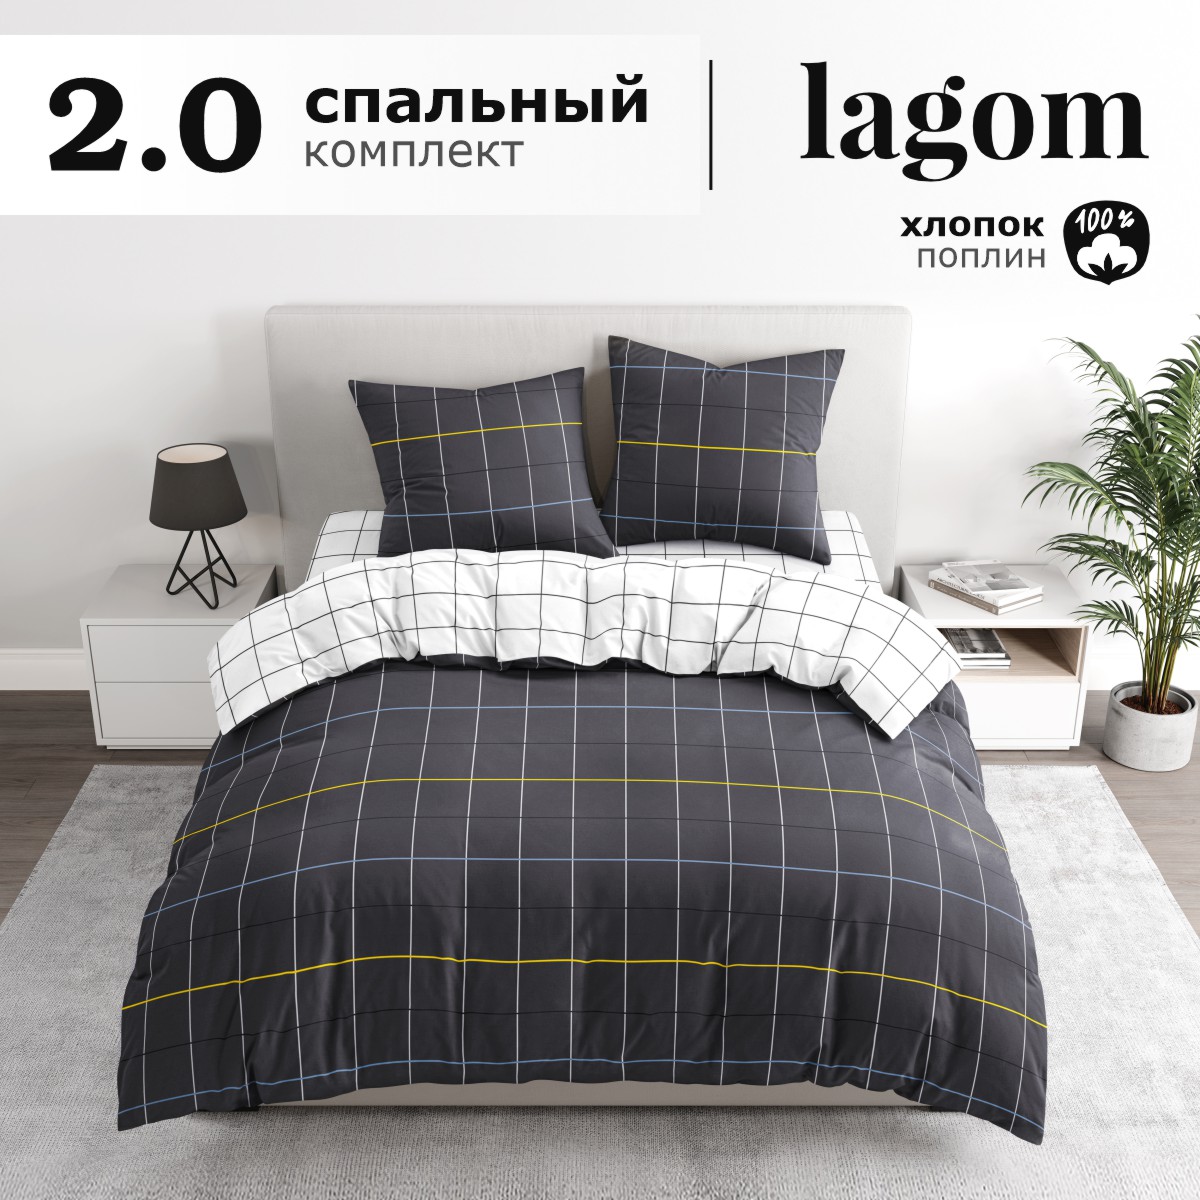 Комплект постельного белья Lagom Питео, поплин, 2 спальный наволочки 70х70 2 шт